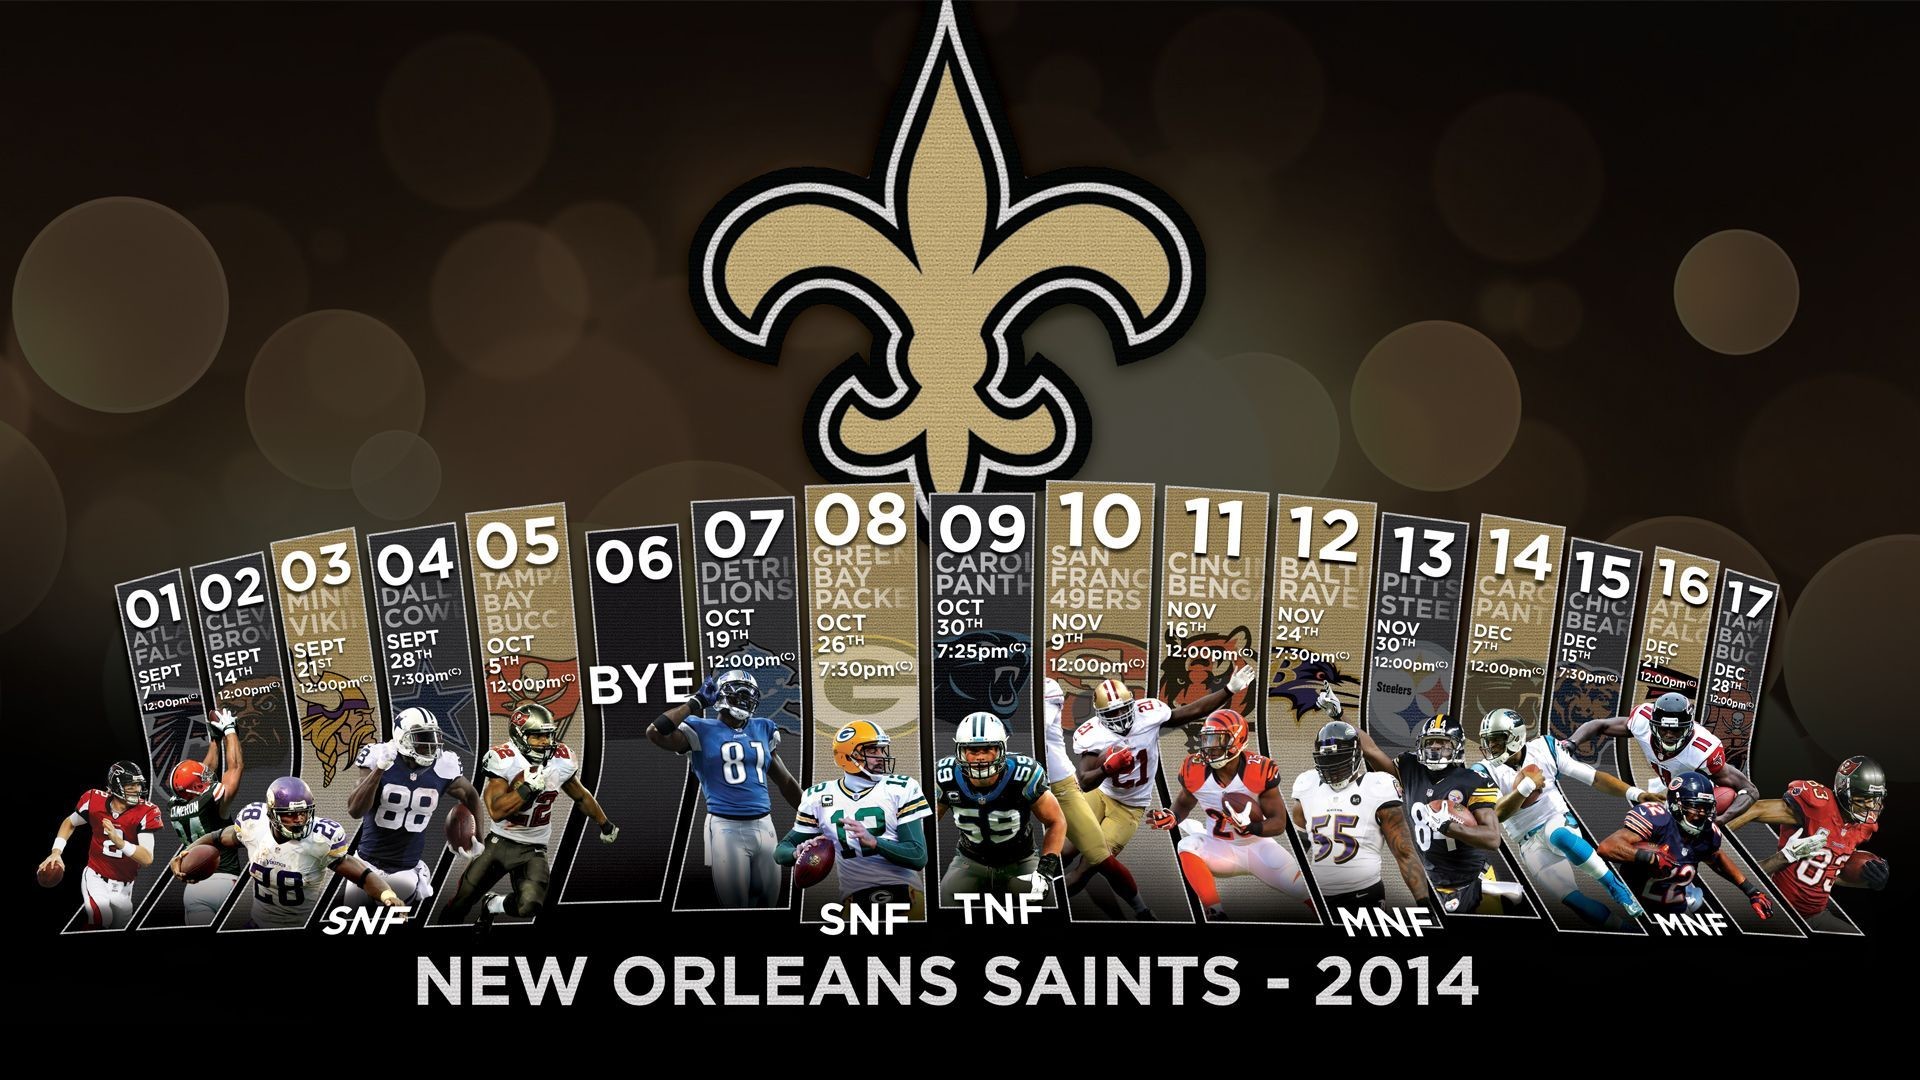 New Orleans Saints NFL - Saints News, Scores, Stats